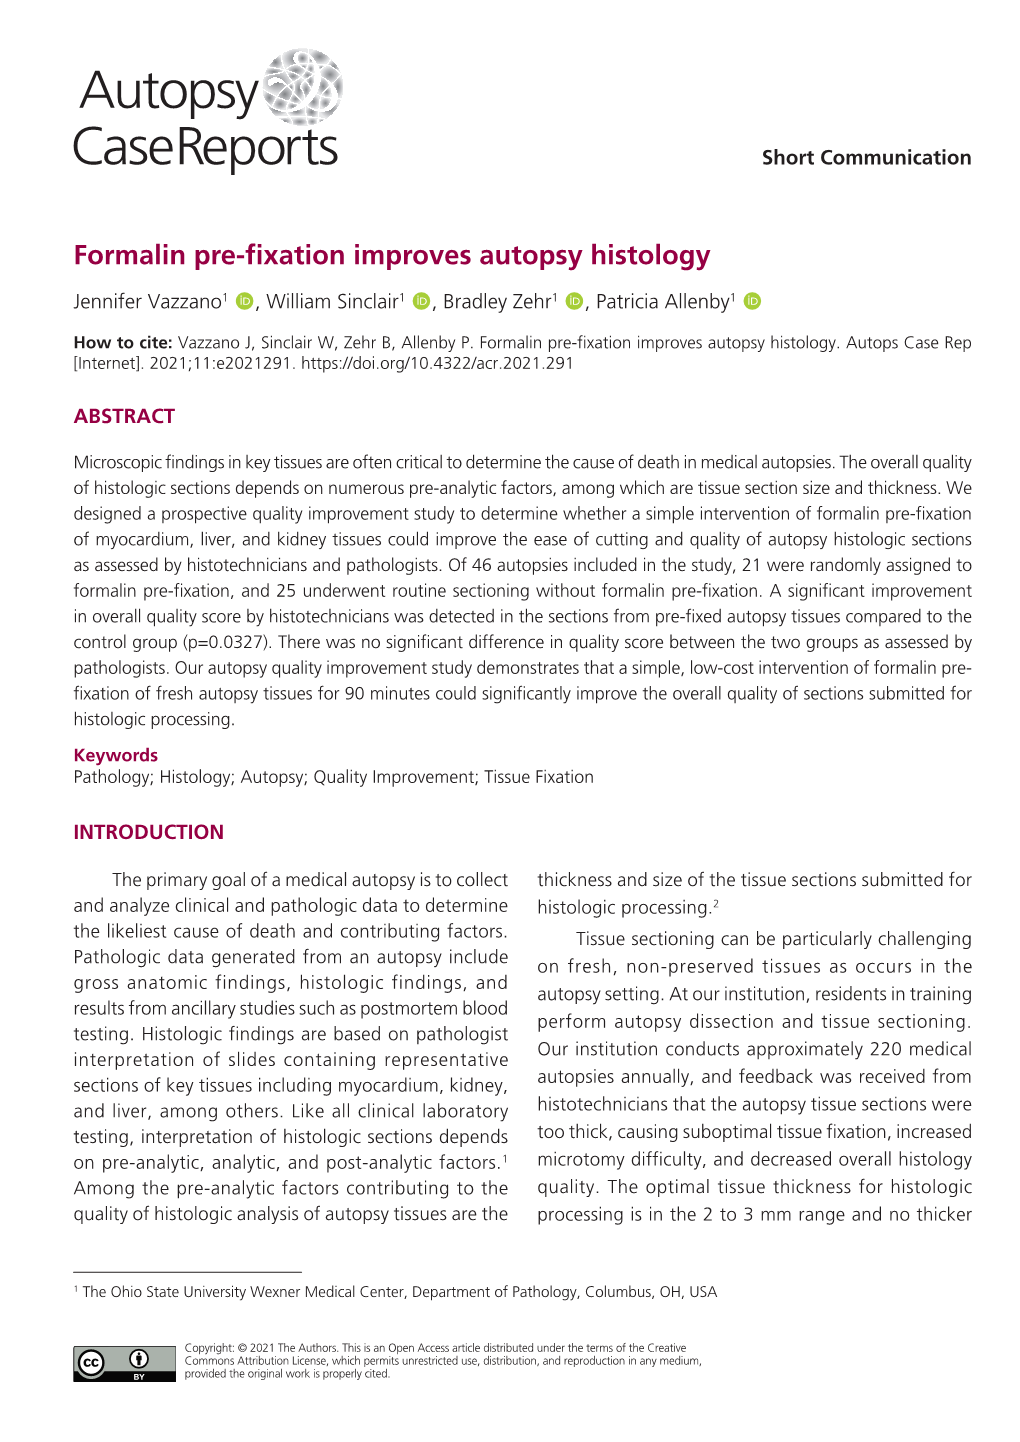 Formalin Pre-Fixation Improves Autopsy Histology